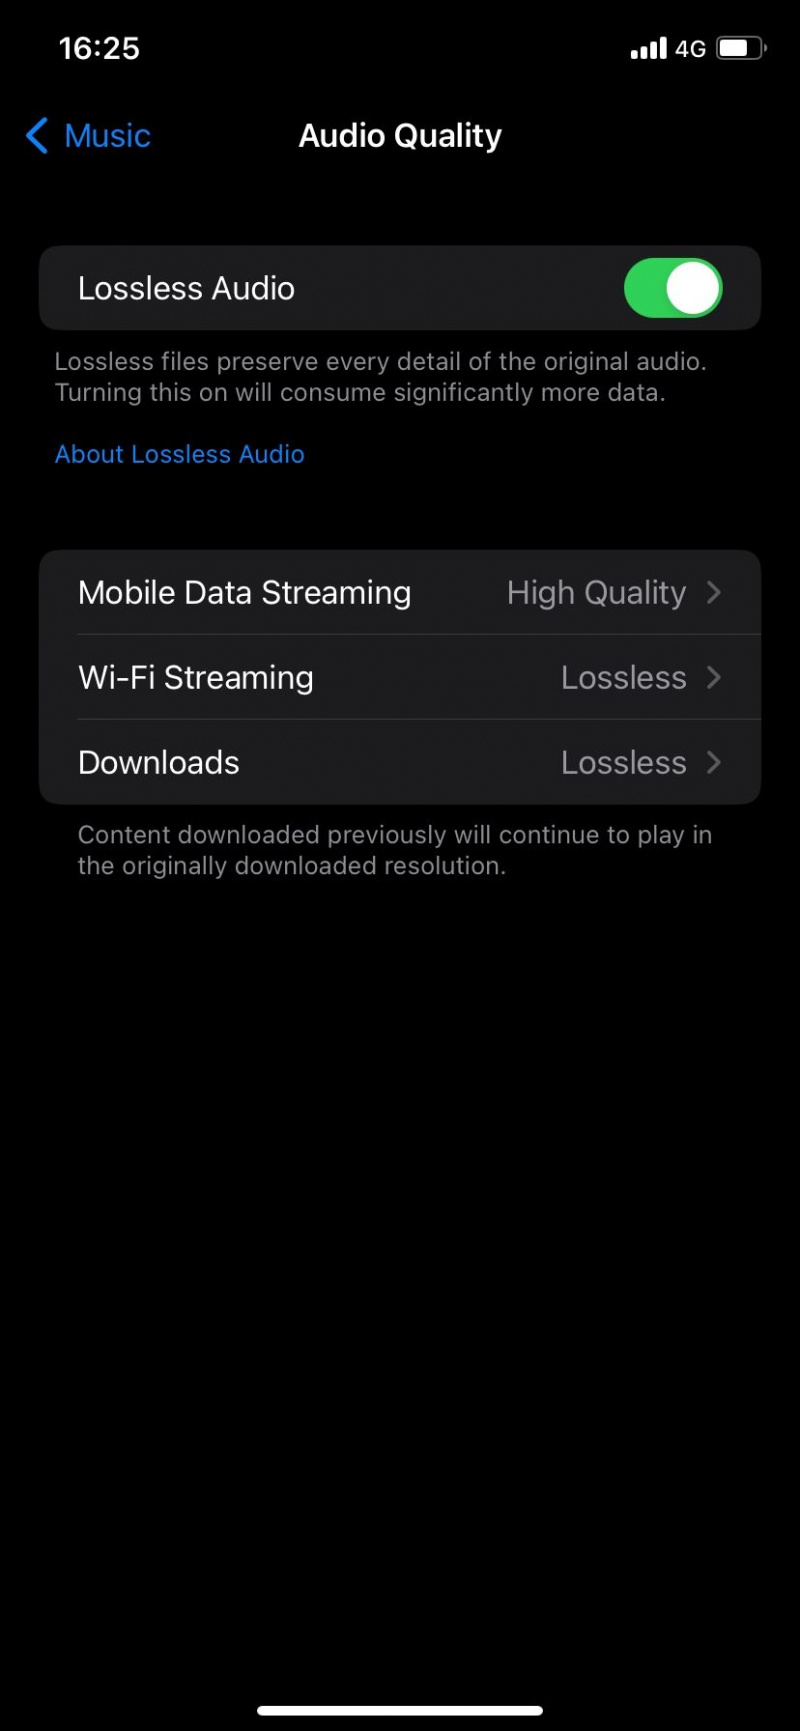   Página de configurações de qualidade de áudio no Apple Music